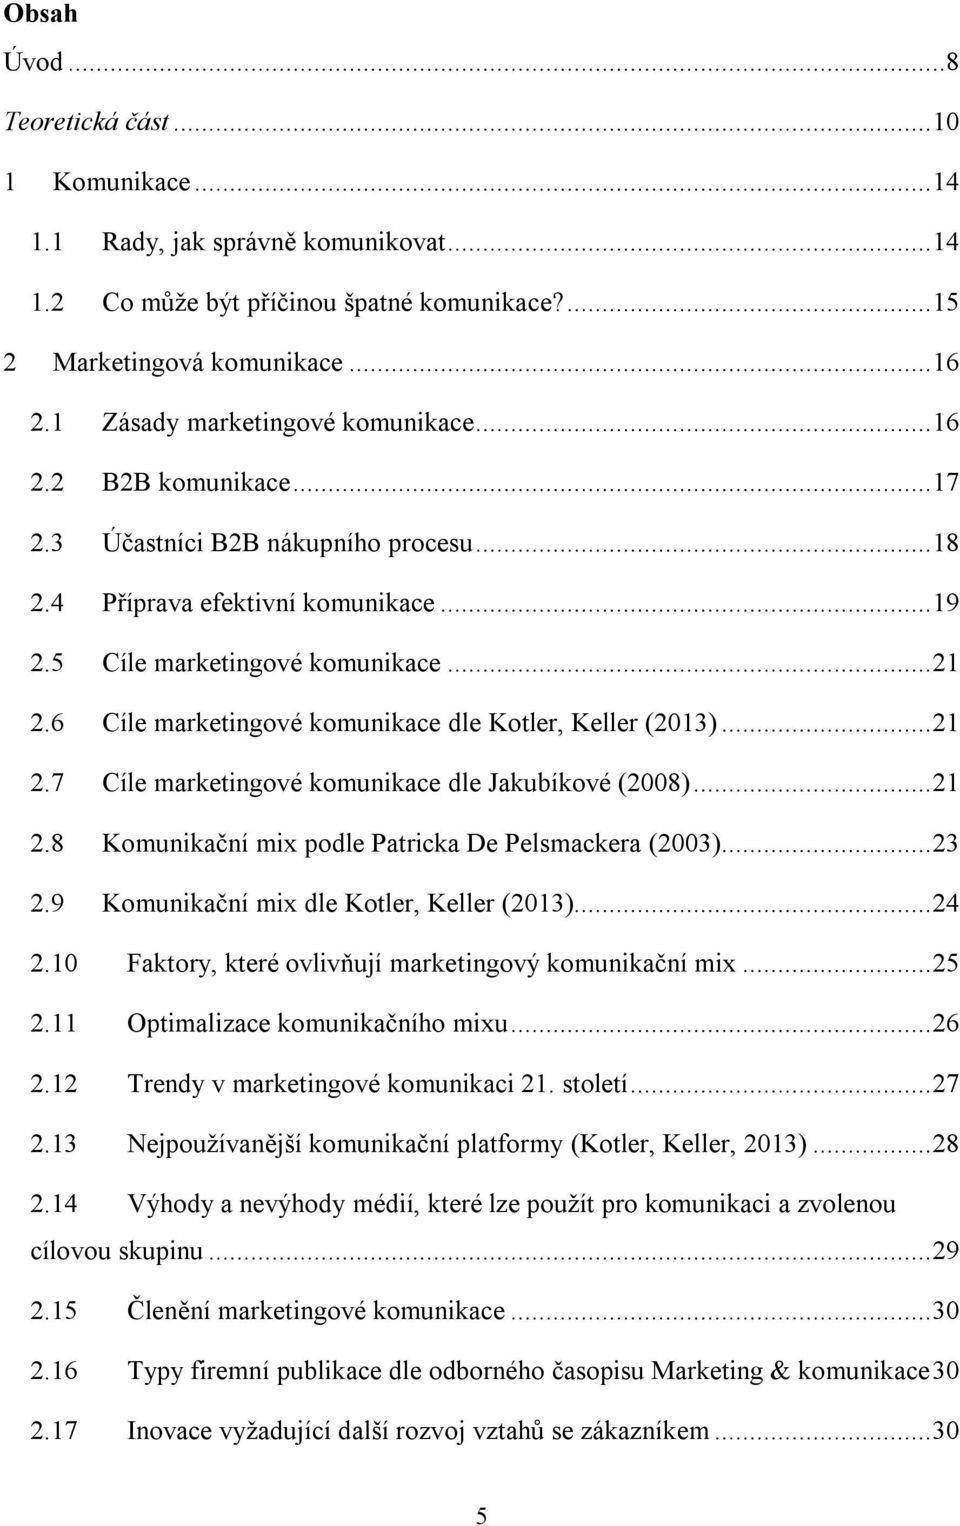 6 Cíle marketingové komunikace dle Kotler, Keller (2013)... 21 2.7 Cíle marketingové komunikace dle Jakubíkové (2008)... 21 2.8 Komunikační mix podle Patricka De Pelsmackera (2003)... 23 2.